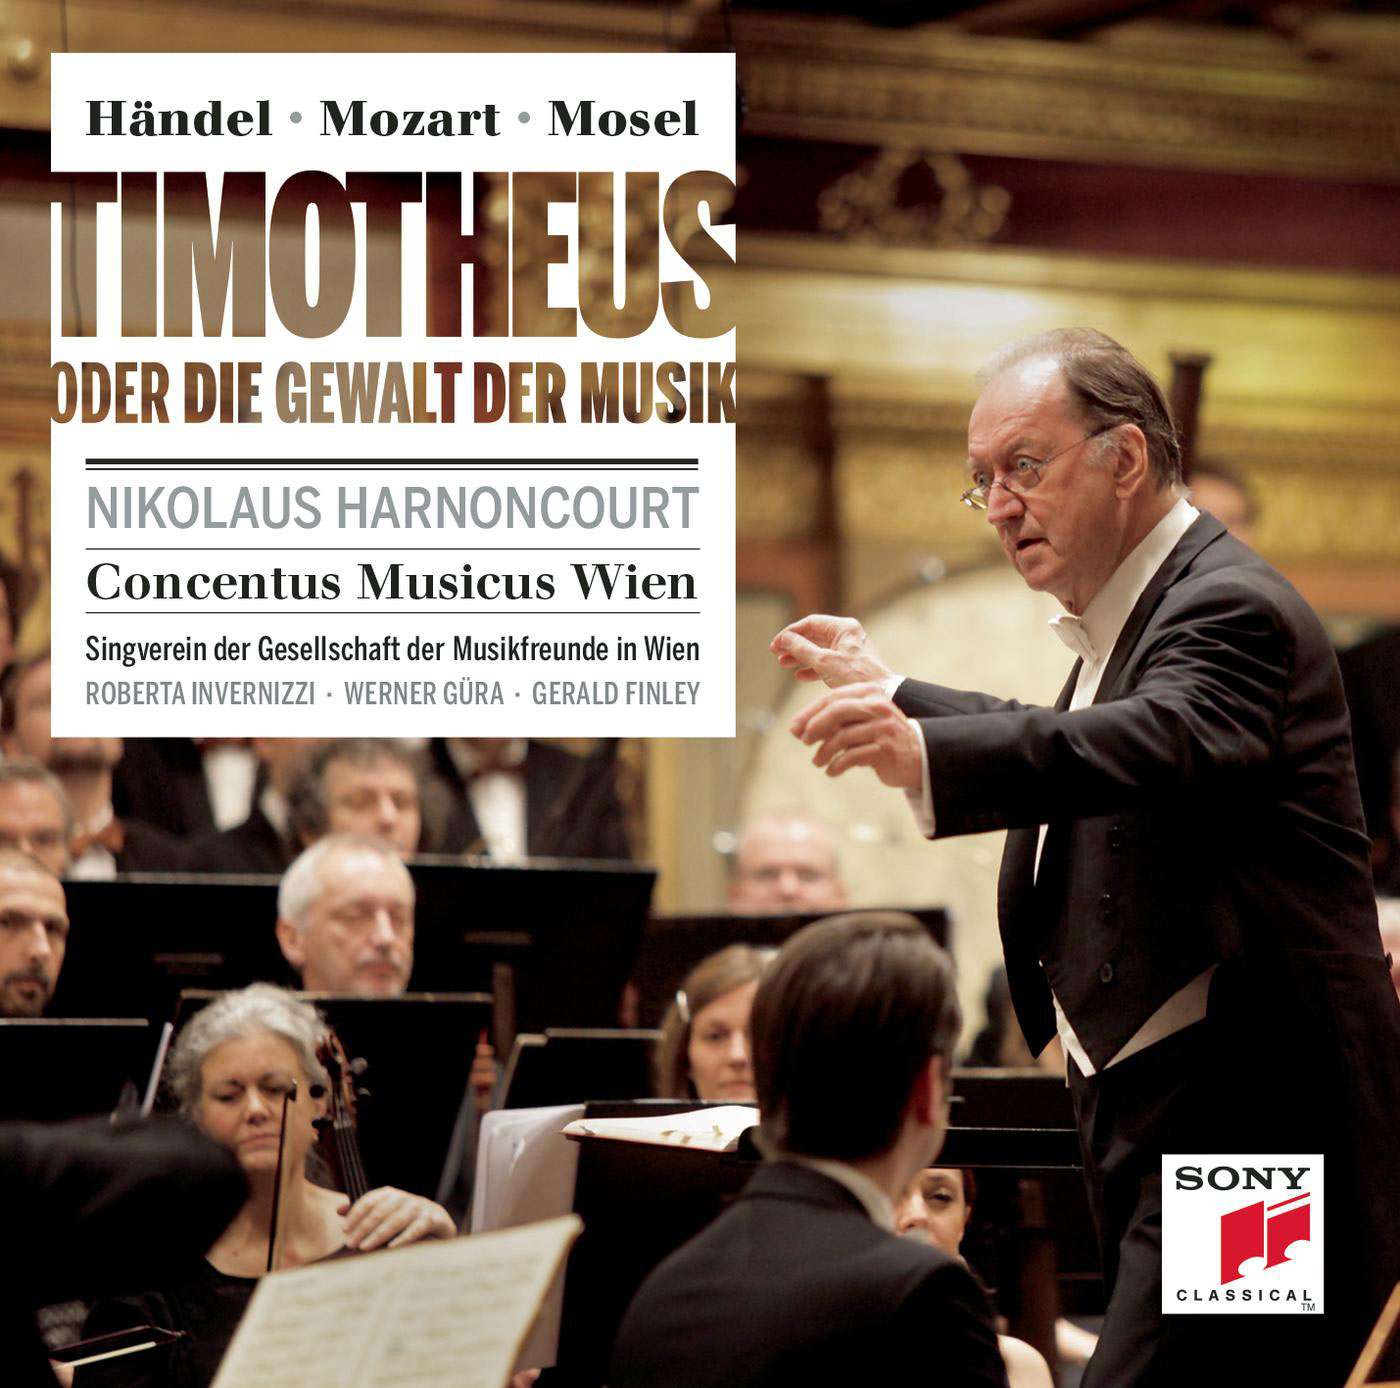 Nikolaus Harnoncourt – Handel, Mozart, Mosel: Timotheus Oder Die Gewalt Der Musik (Timothee Ou Le Pouvoir De La Musique) (2013) [FLAC 24bit/48kHz]